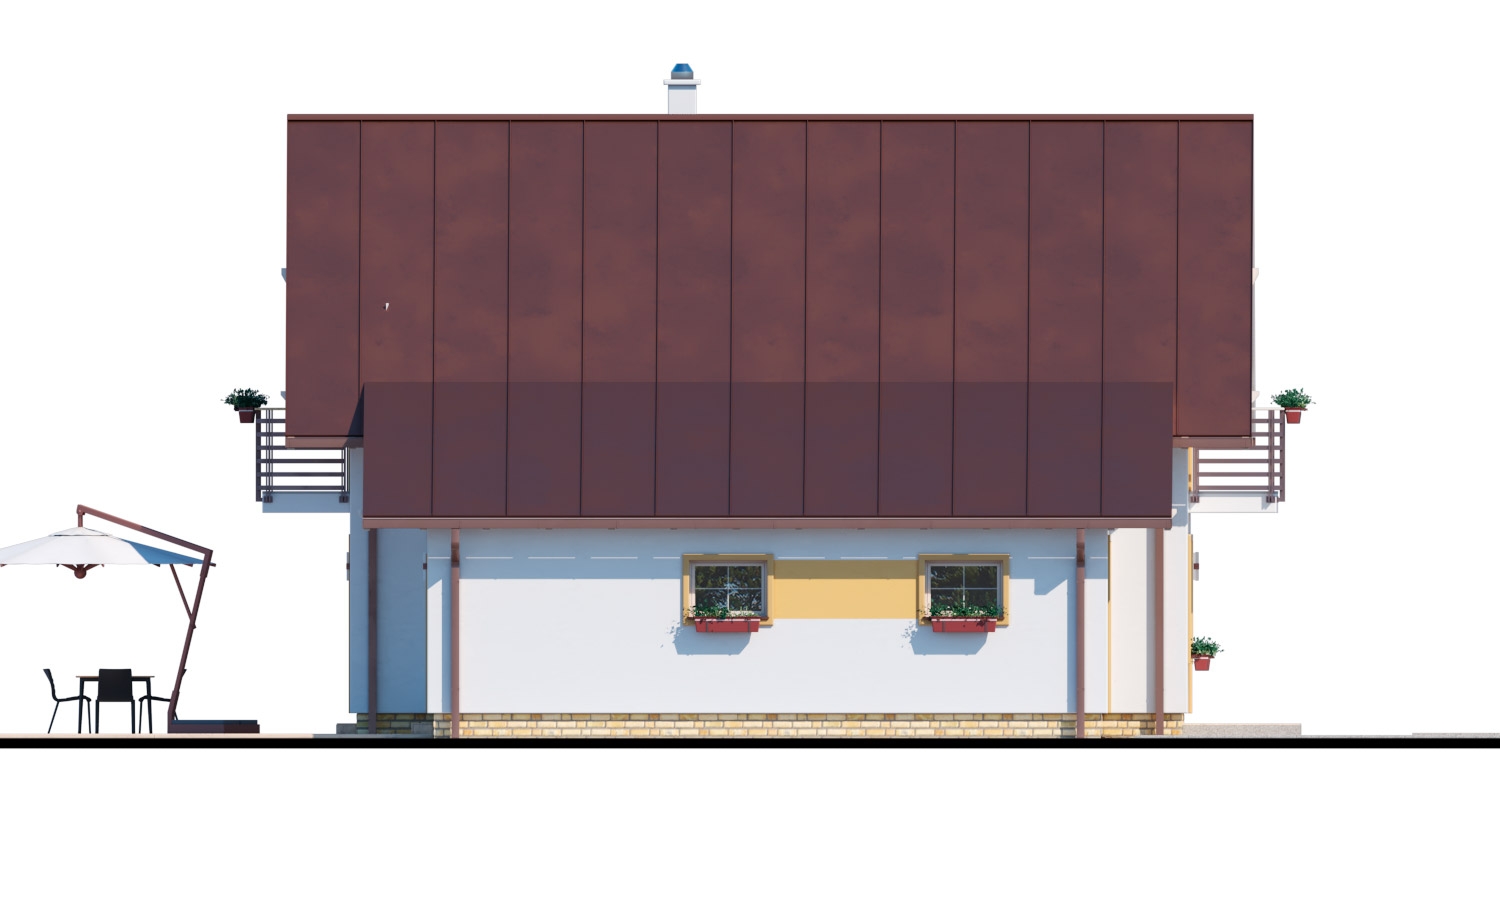 Zrkadlový pohľad 4. - Rodinný dům s přistavěnou garáží, pracovnou v přízemí, třemi pokoji na patře a krbem.